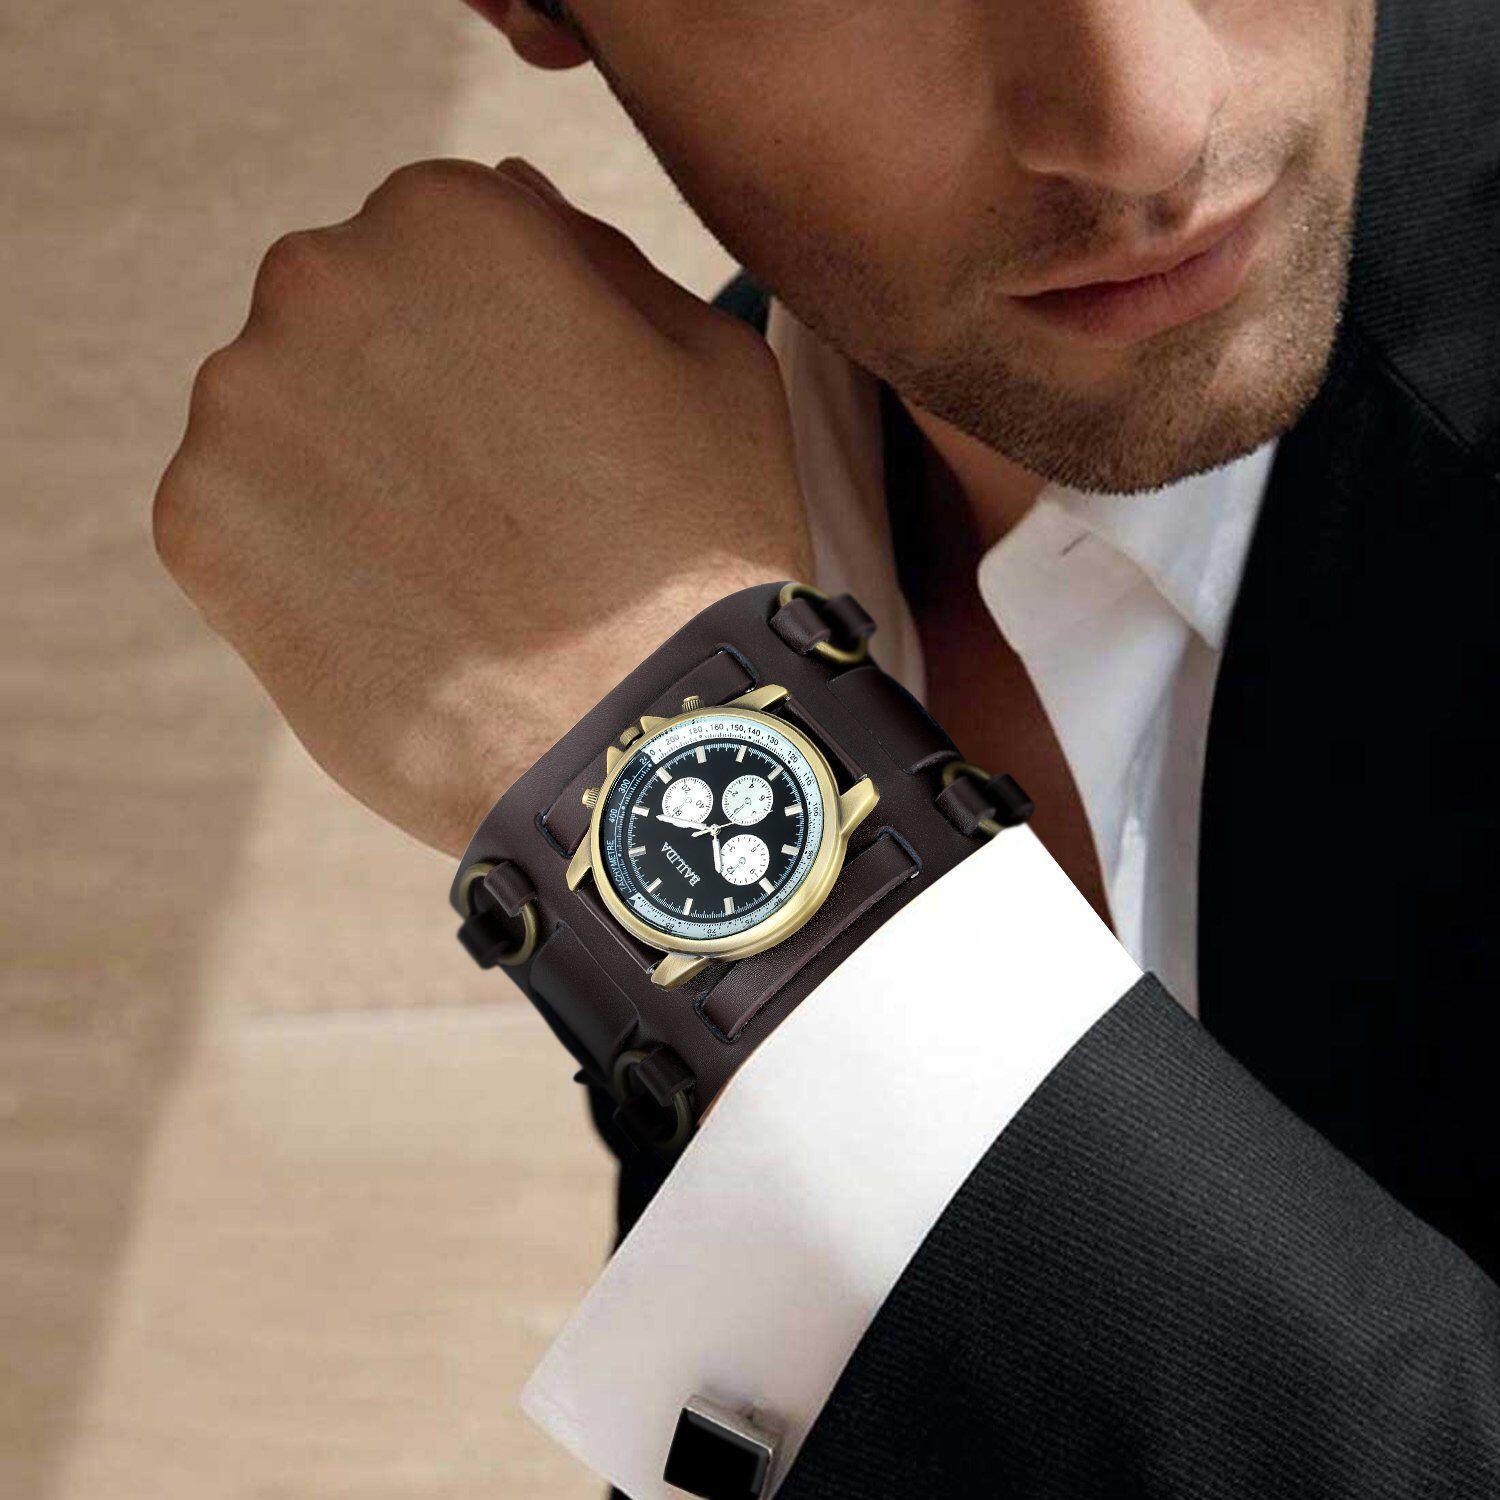 Лучшие фирмы часов мужских. Часы мужские. Красивые мужские часы. Часы на руке. Мужские часы на руке.